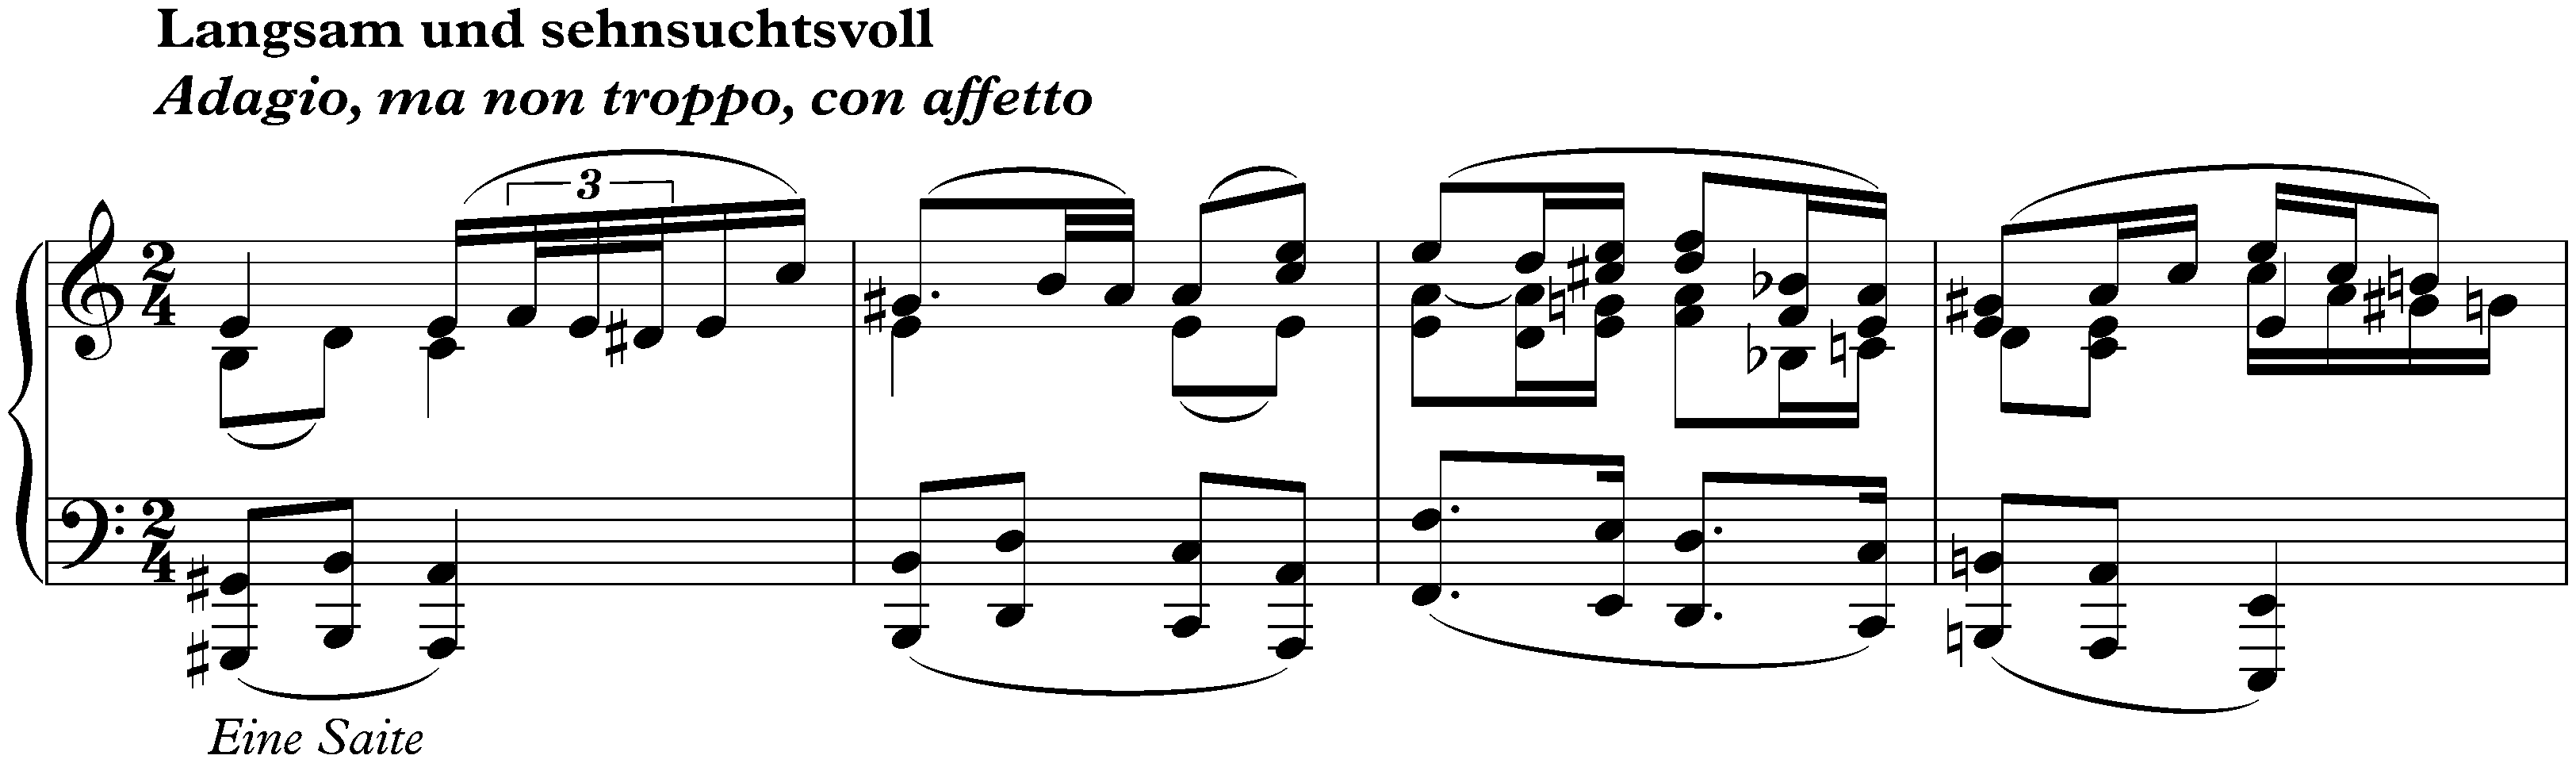 Sonata no. 28 in A major, op. 101; 3. Langsam und sehnsuchtsvoll